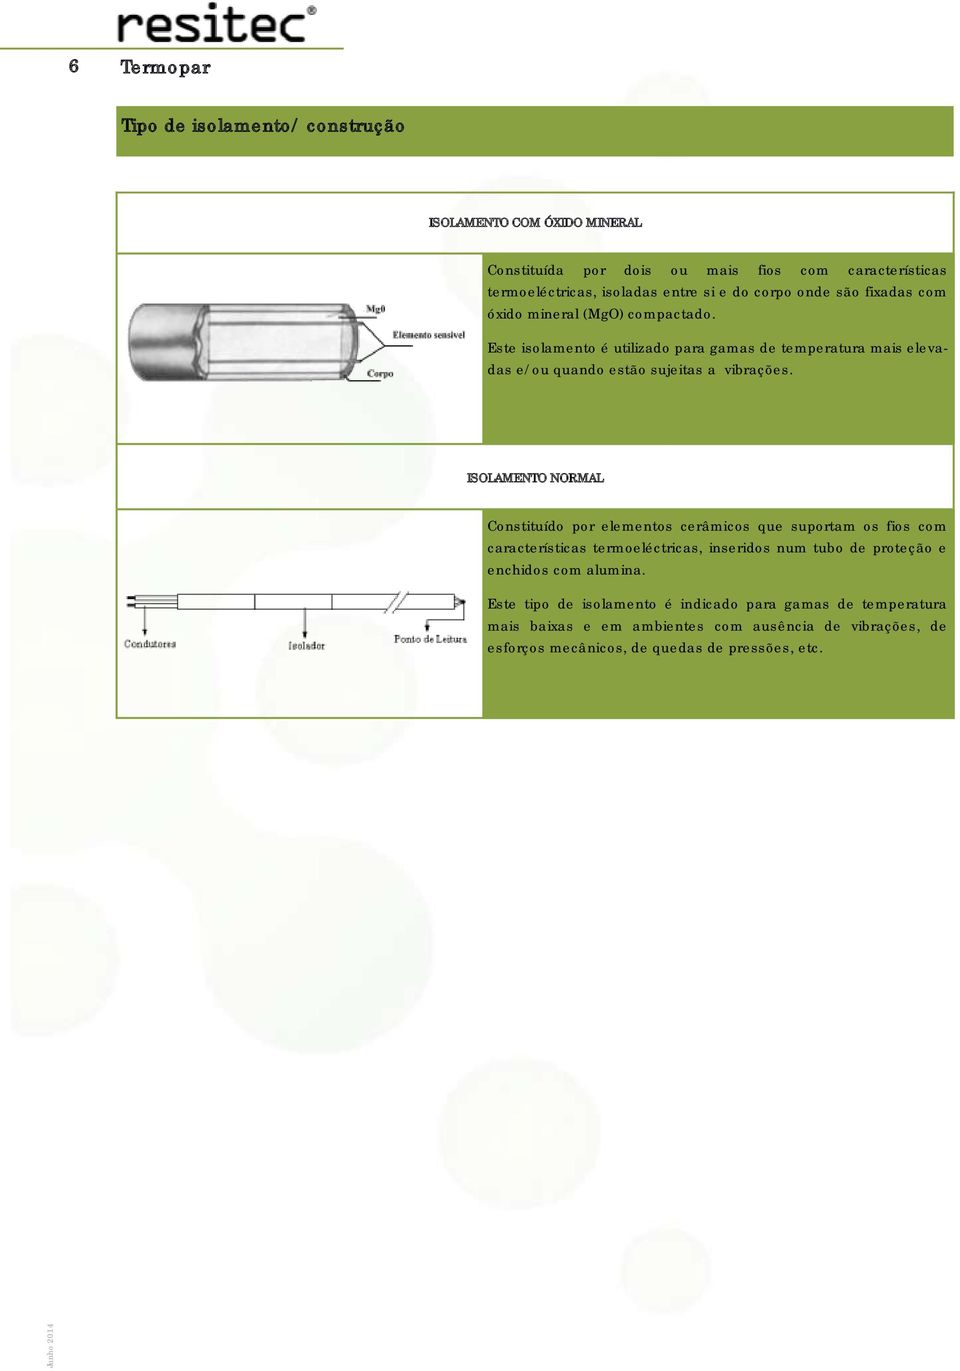 ISOLAMENTO NORMAL Constituído por elementos cerâmicos que suportam os fios com características termoeléctricas, inseridos num tubo de proteção e enchidos com